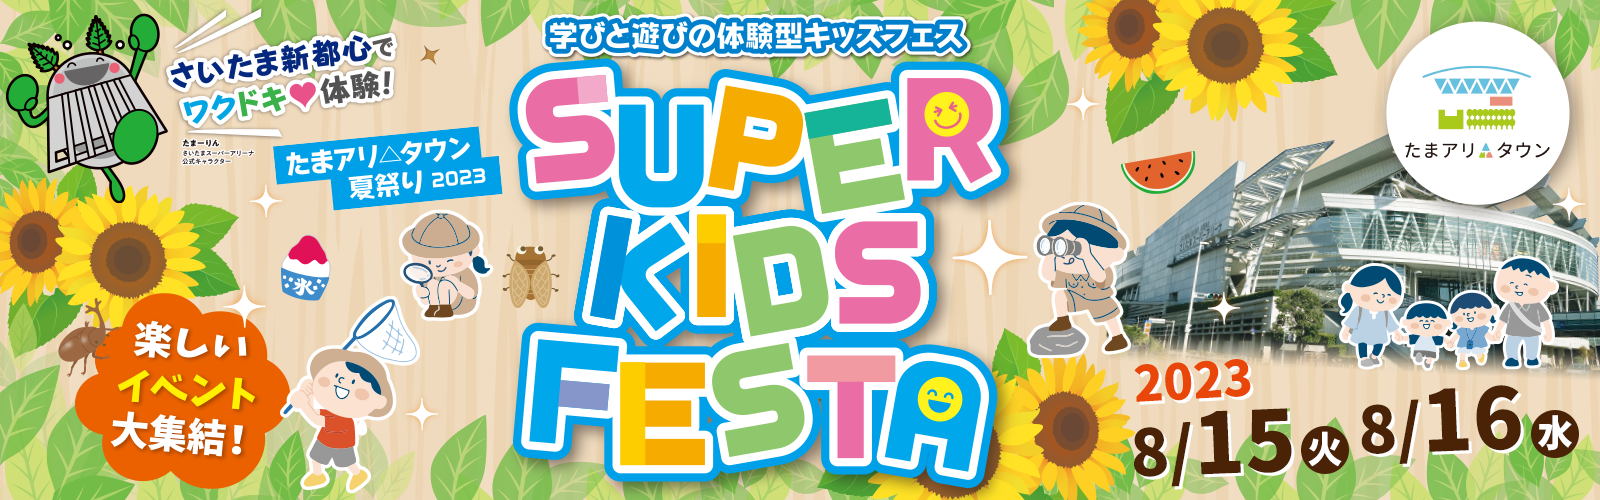 たまアリ△タウン 夏祭り 2023 SUPER KIDS FESTA